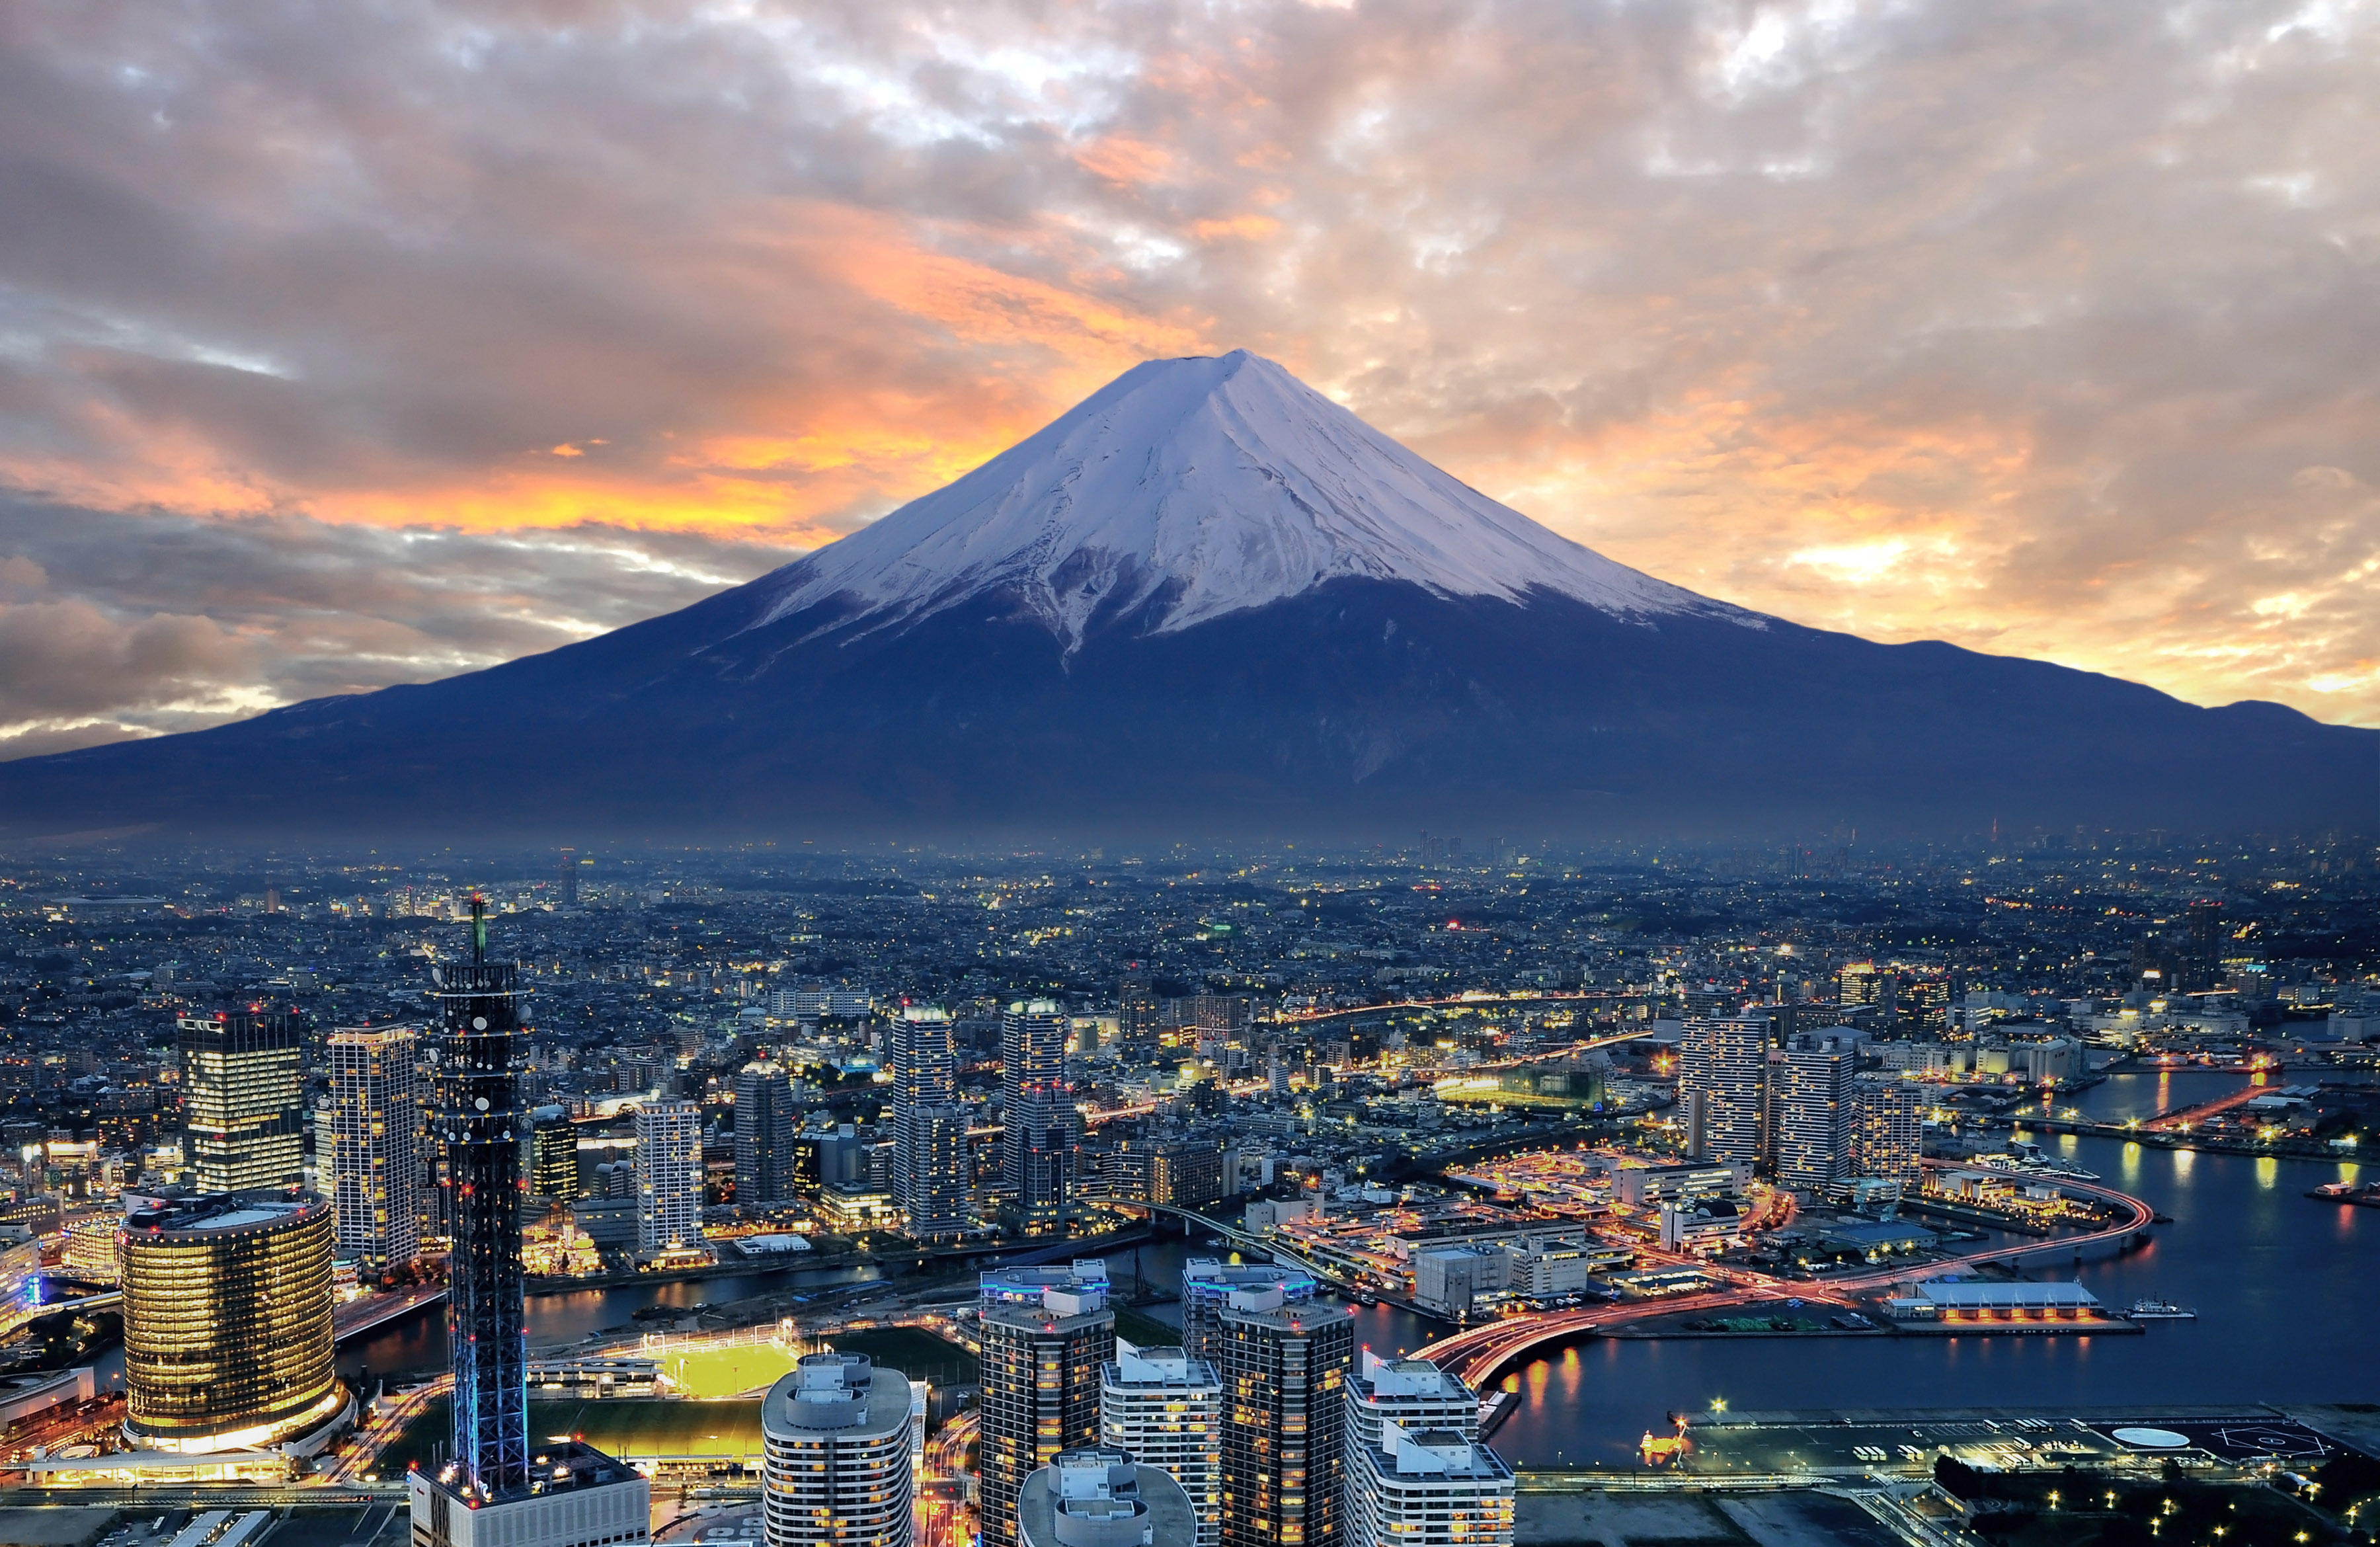 富士山是一座活火山,一旦再次喷发,日本会怎样?